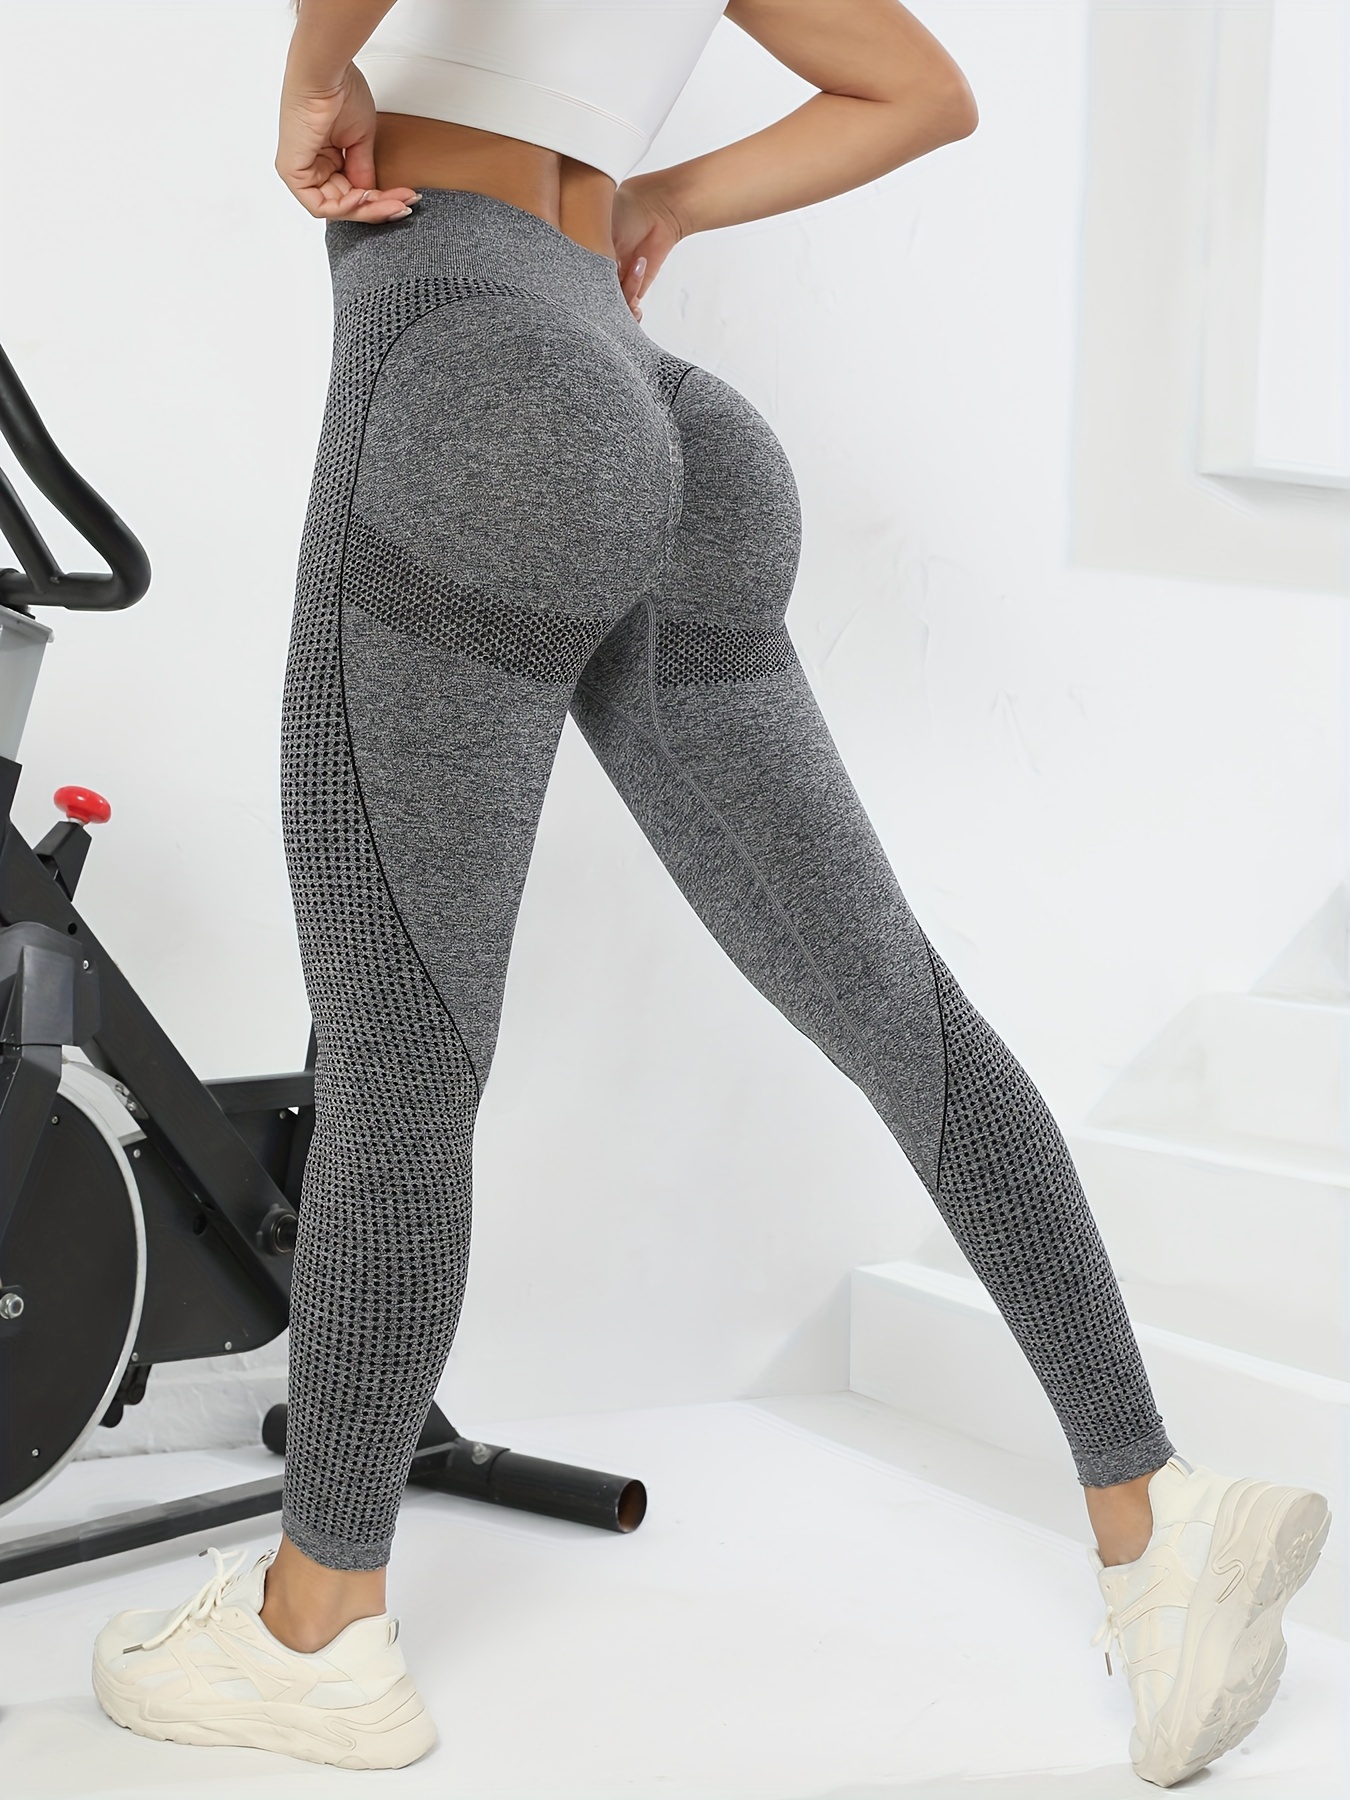 TIMPCV Butt Lifting Workout Leggings for Women, Scrunch Butt Gym